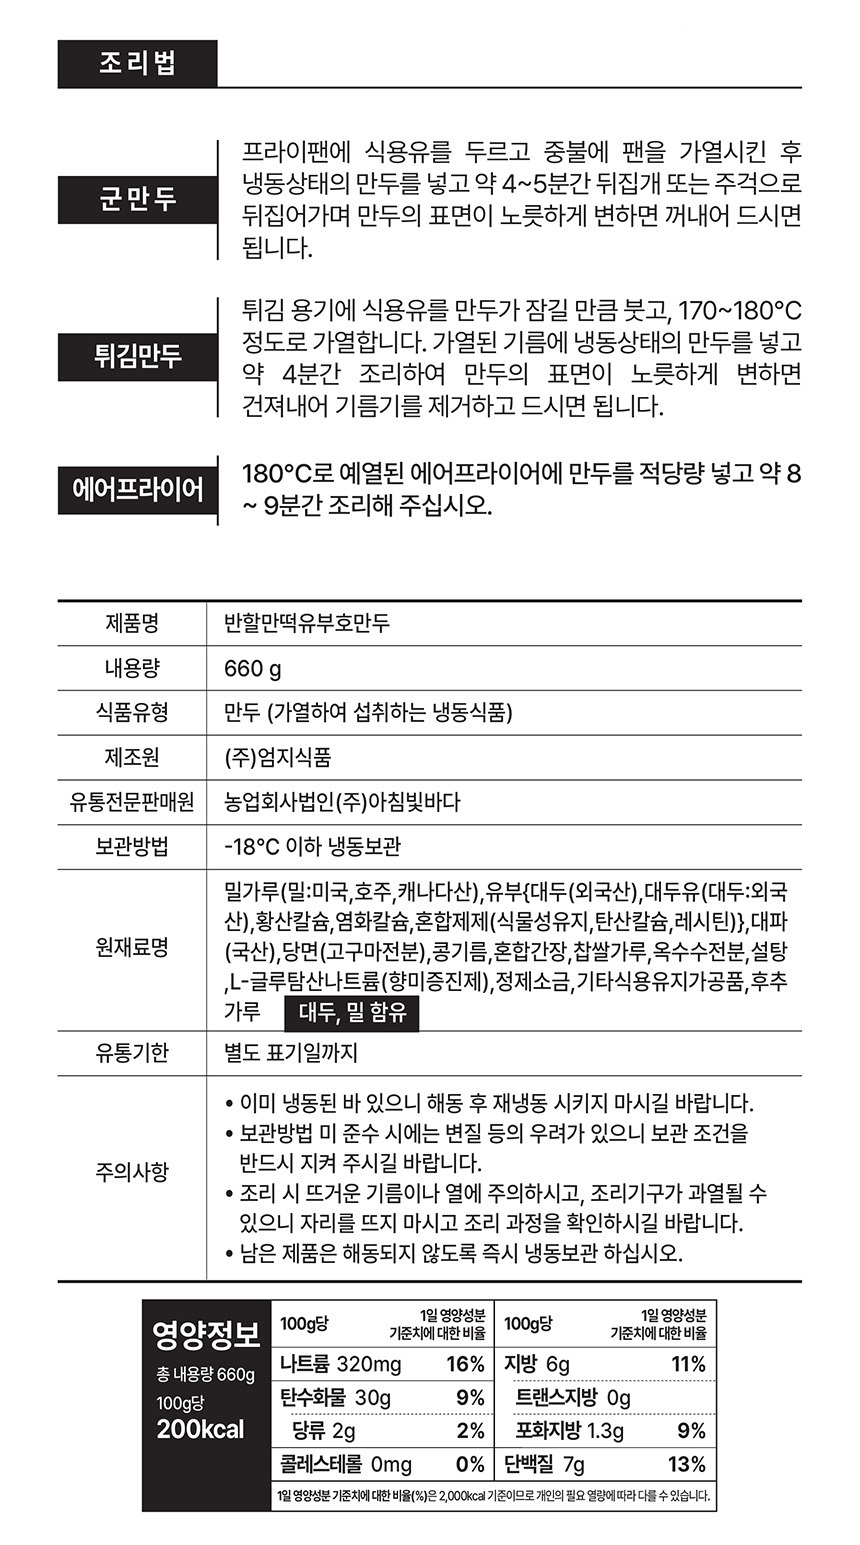 韓國食品-[대구 반할만떡] 유부호만두 919g